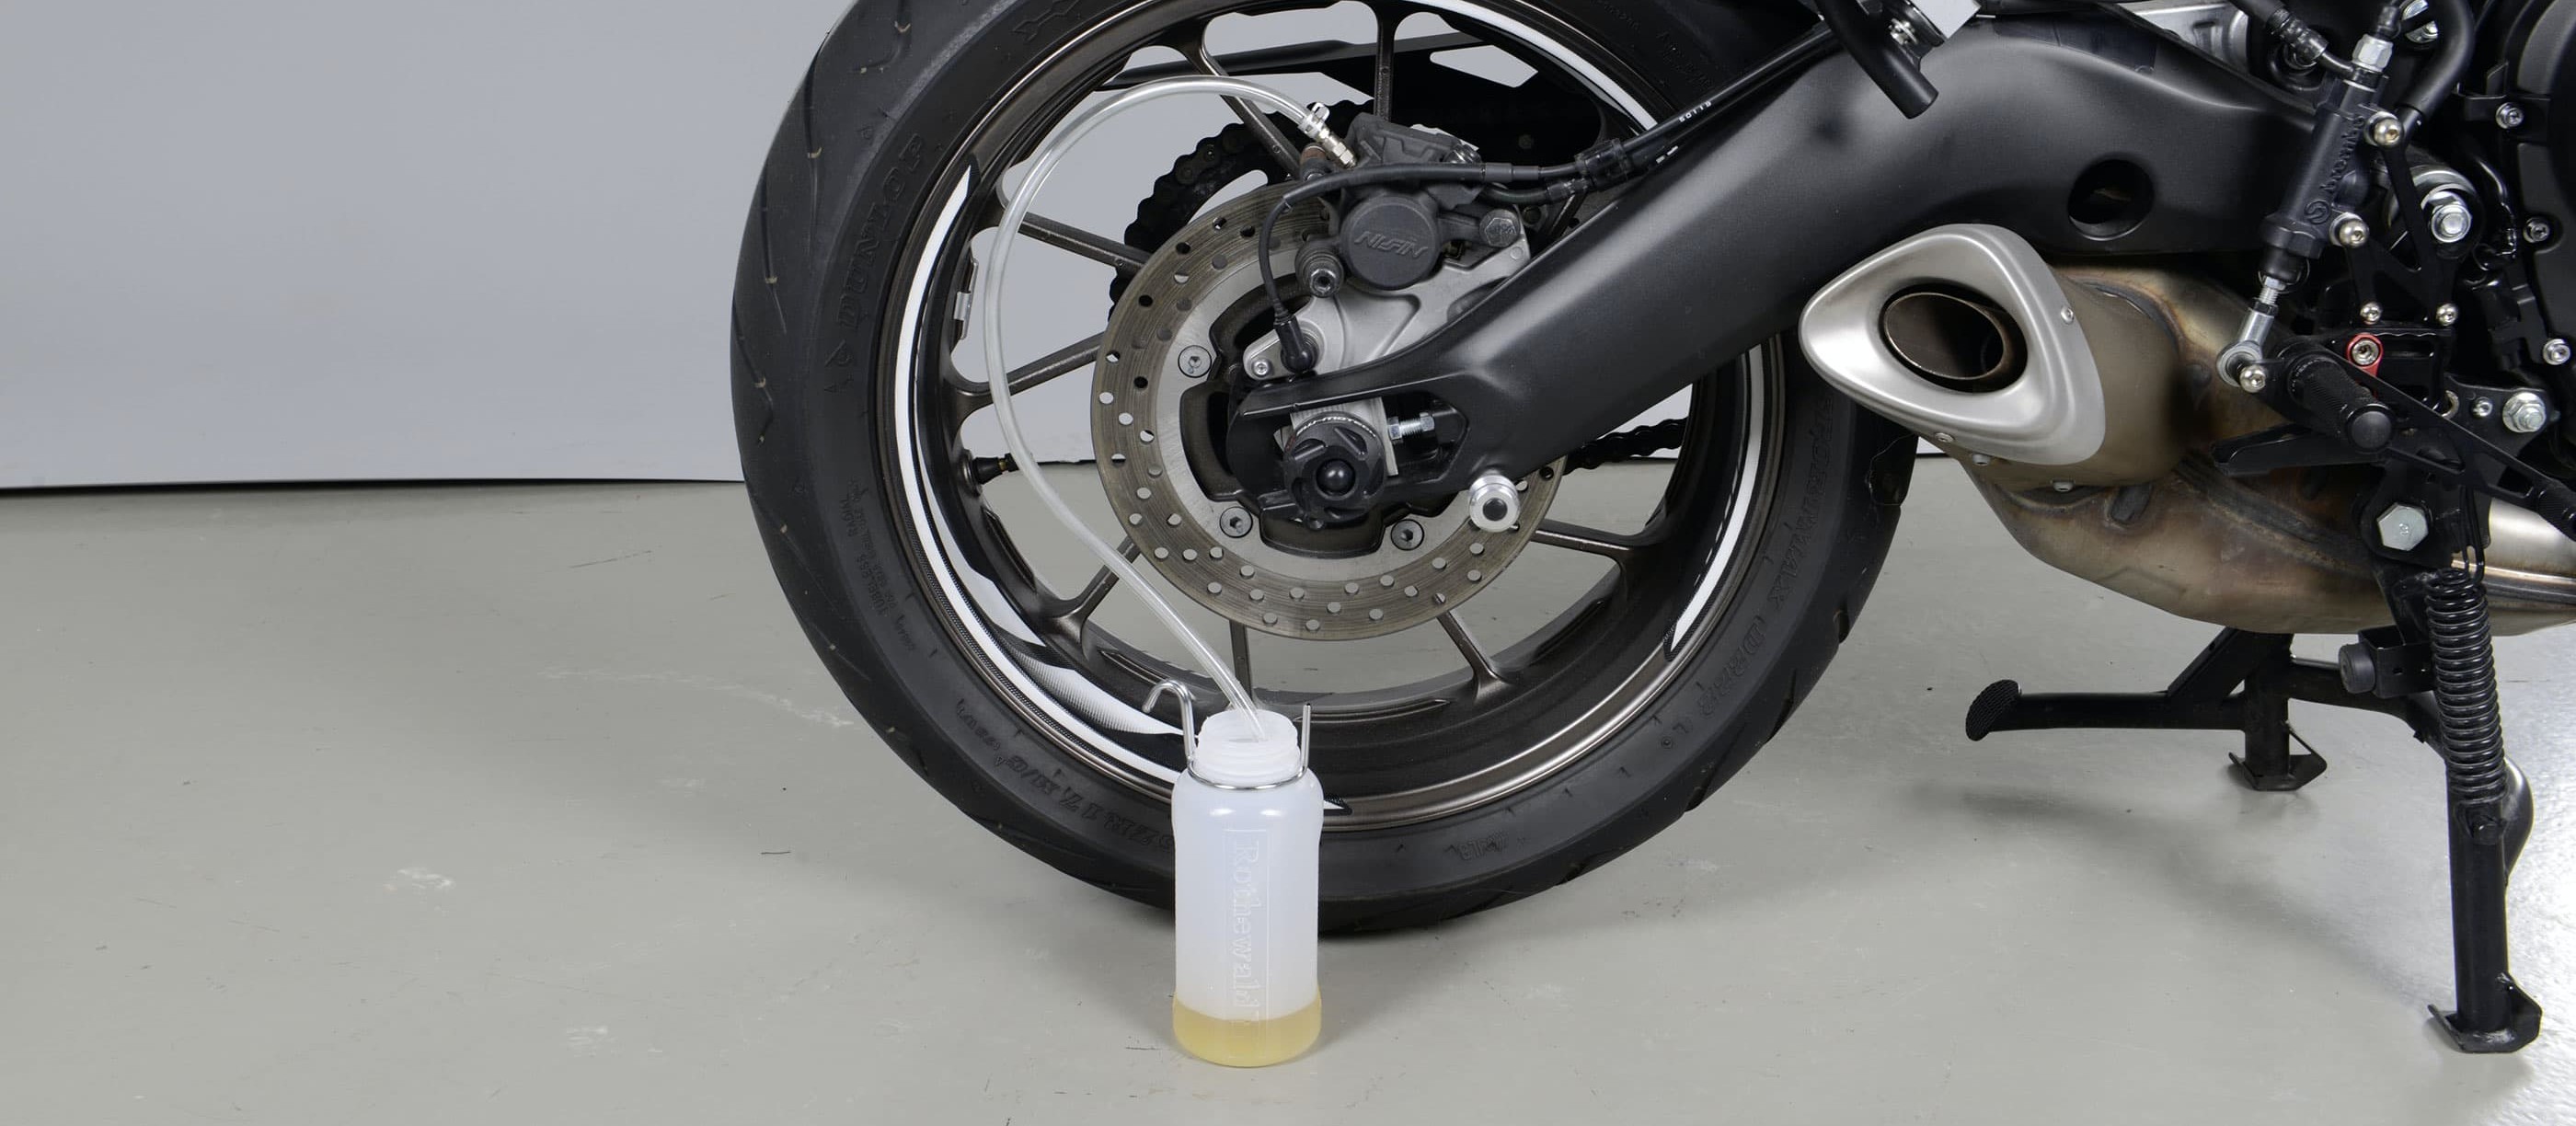 Liquide de frein Dot 4 - Pieces Moto BMW